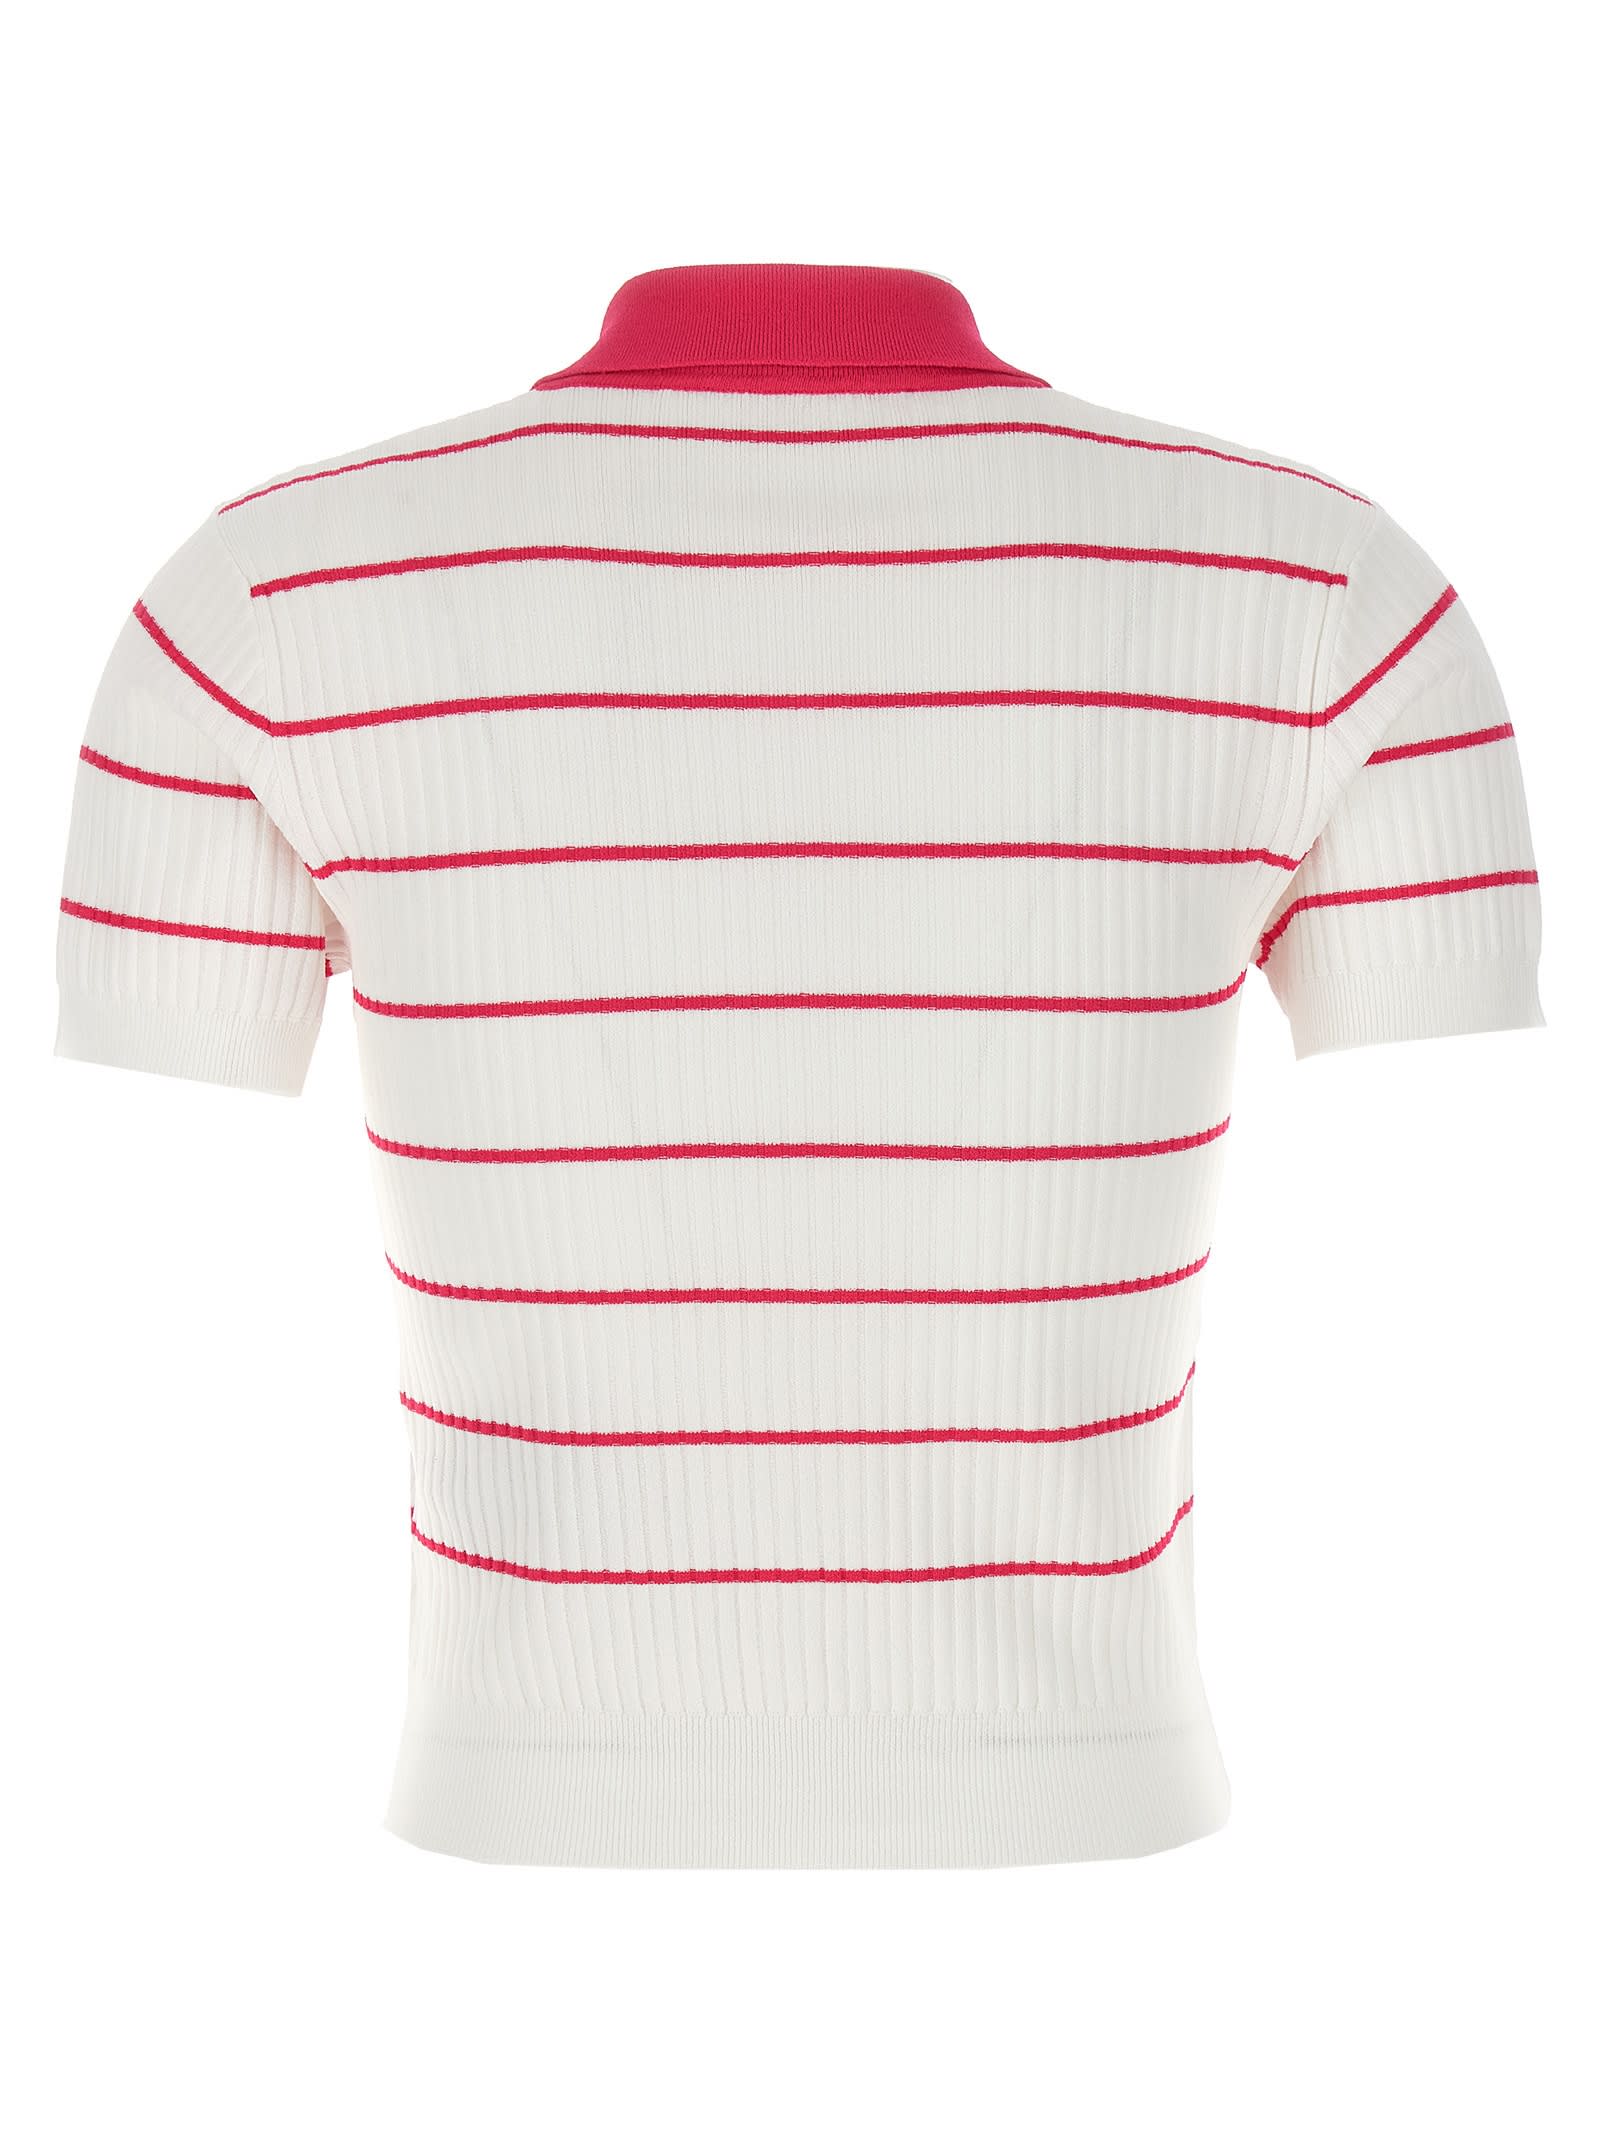 Shop Dsquared2 Striped Polo Shirt In Multicolor